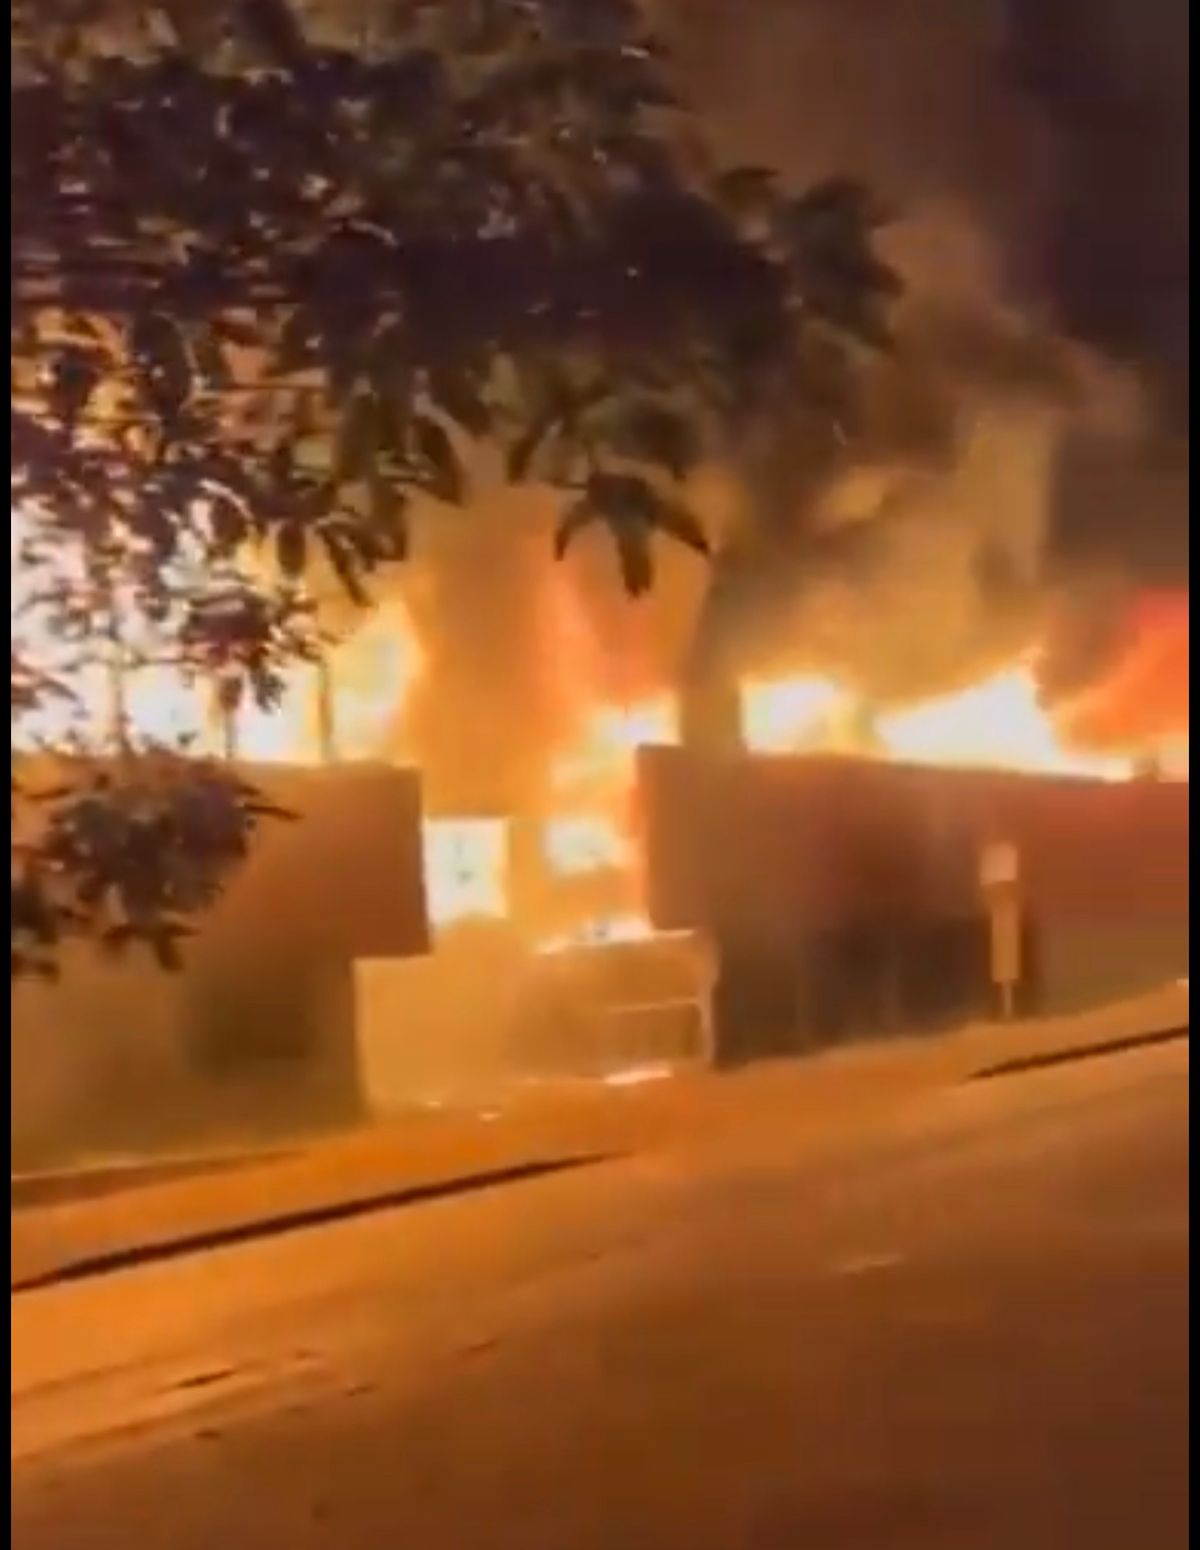 Vue de l'incendie de la médiathèque Jean-Macé à Metz le 30 juin. Photo via Twitter